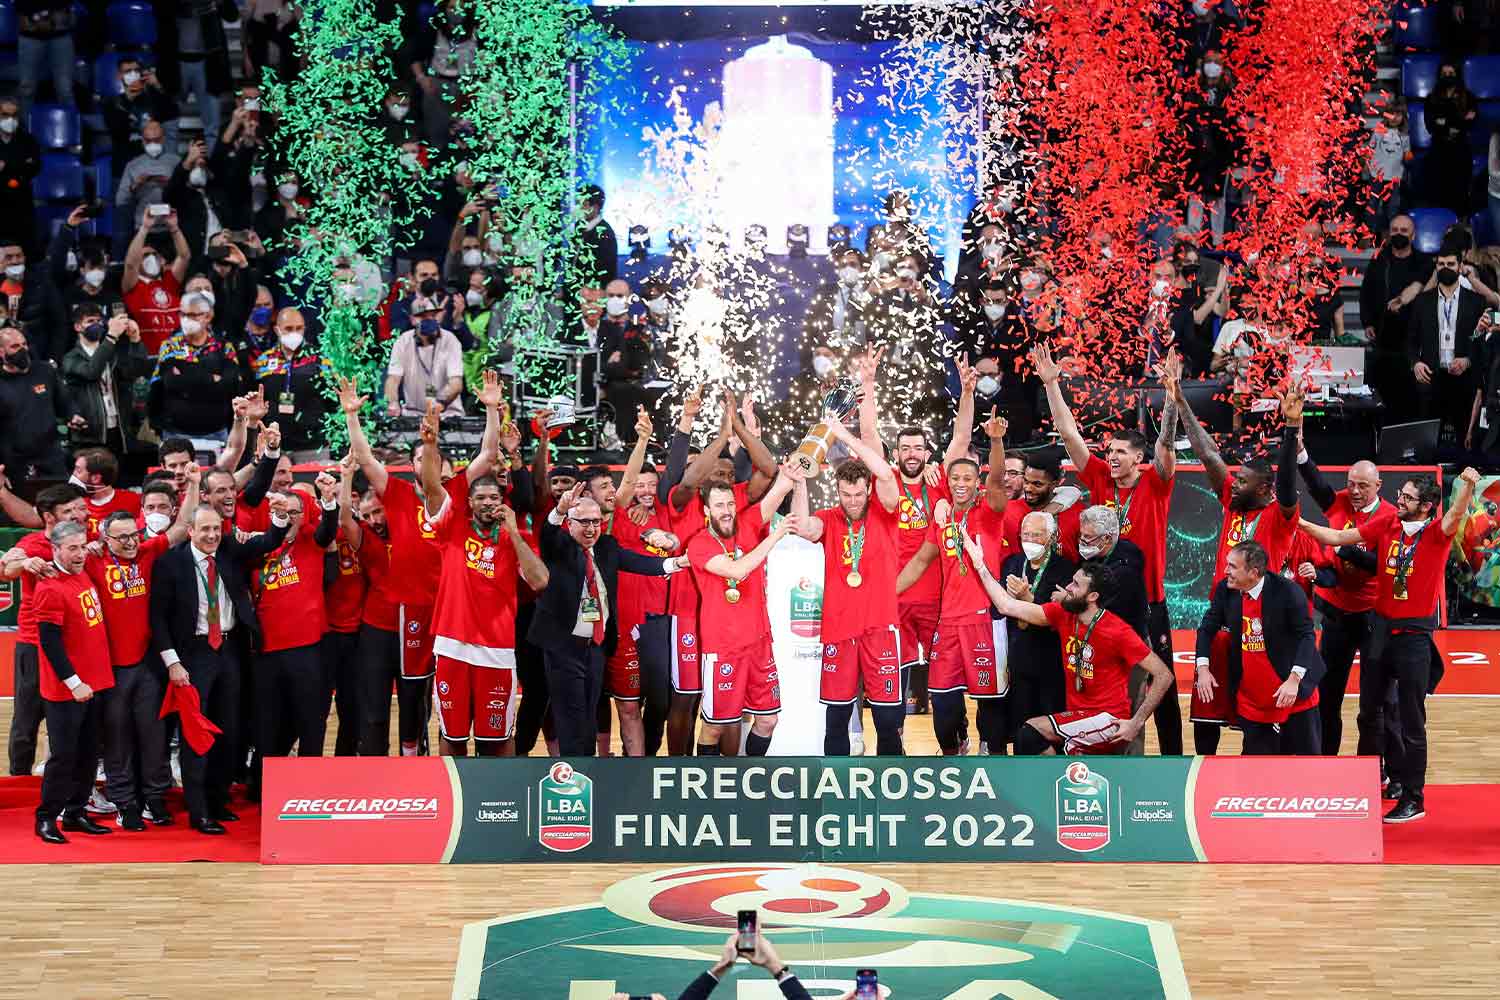 Premiazione della Frecciarossa Final Eight di Coppa Italia di basket 2022